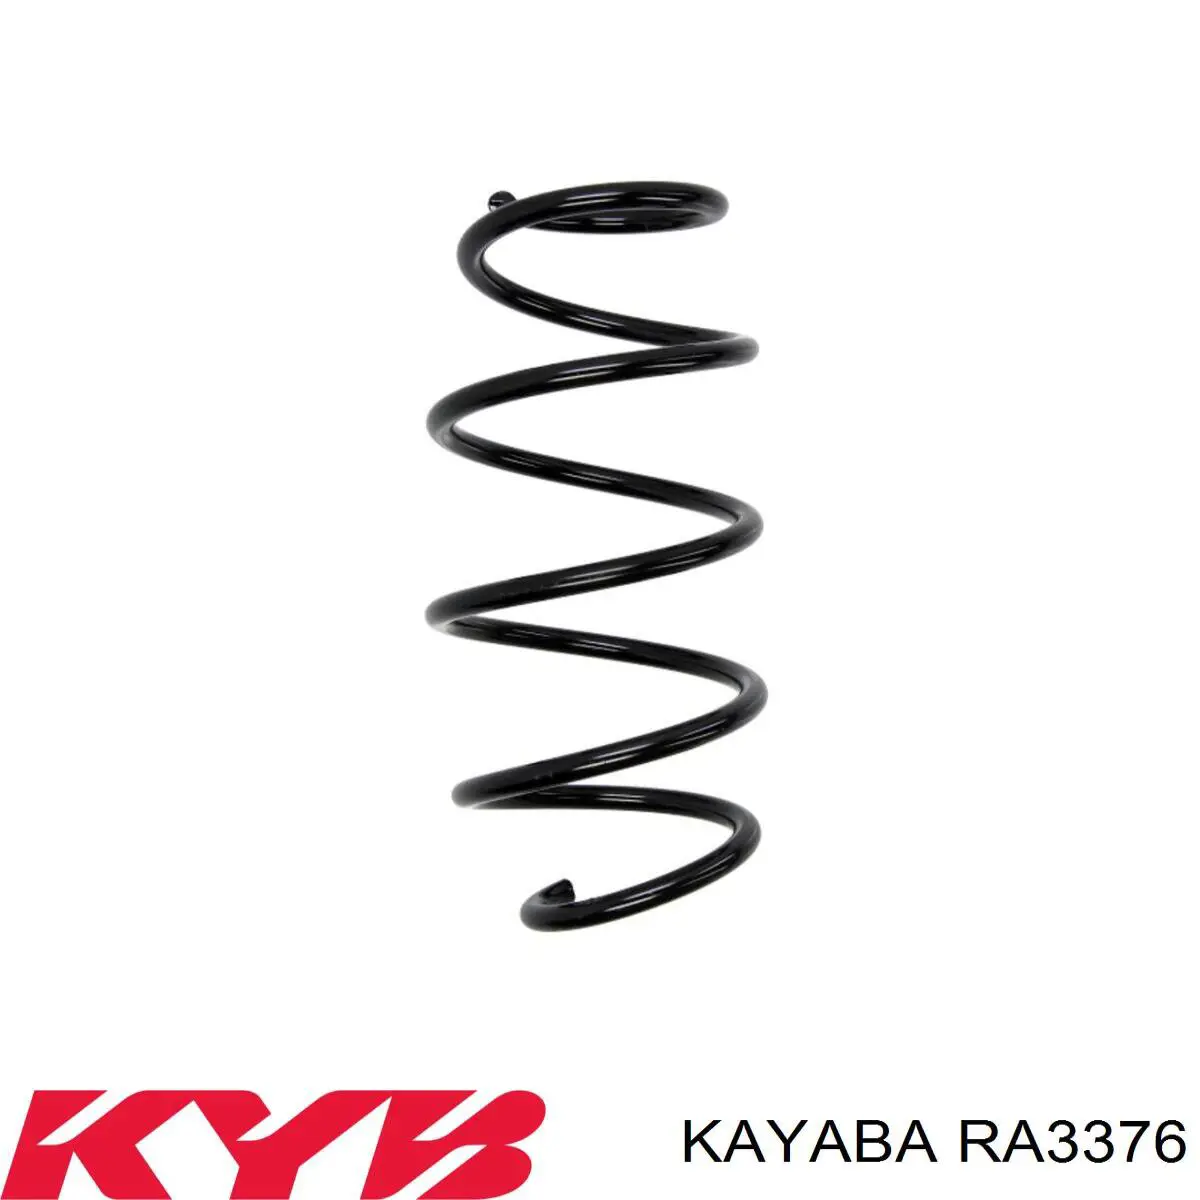 RA3376 Kayaba mola dianteira